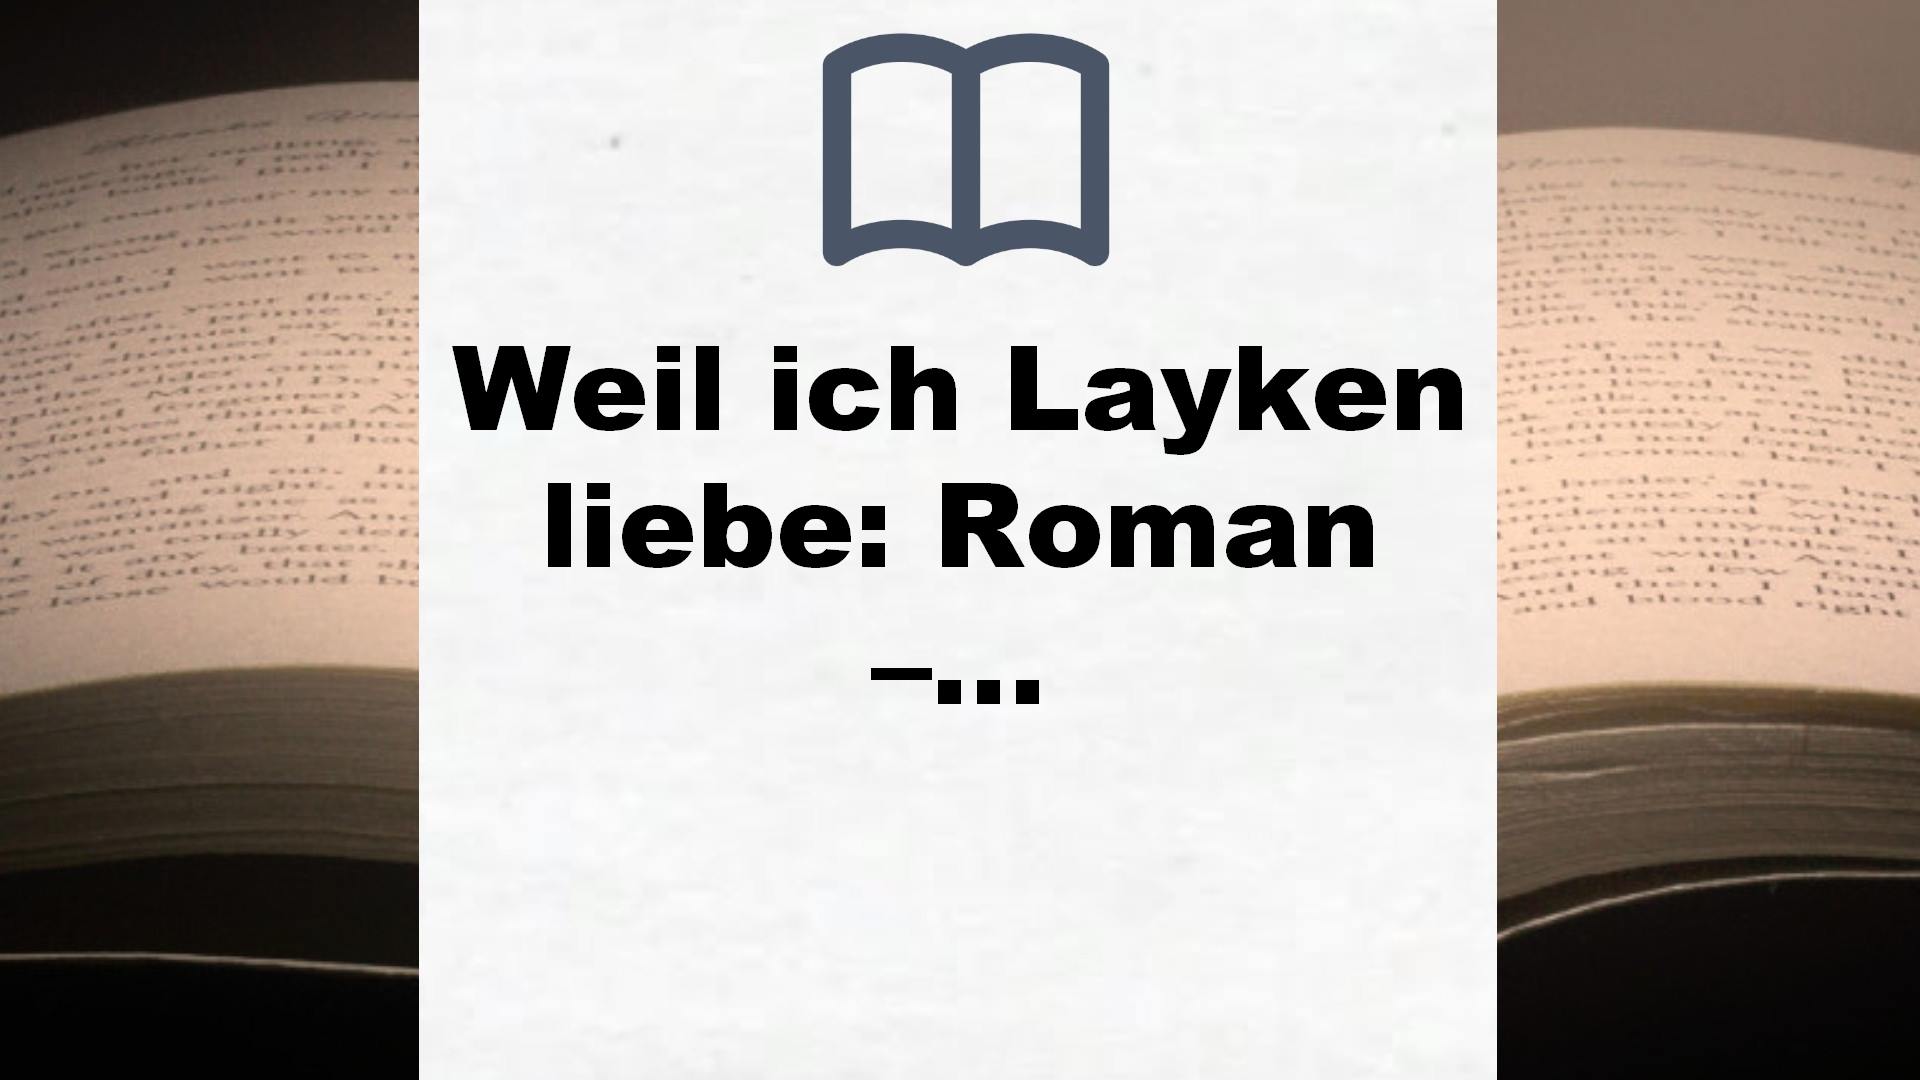 Weil ich Layken liebe: Roman – Die deutsche Ausgabe von ›Slammed‹ – Buchrezension